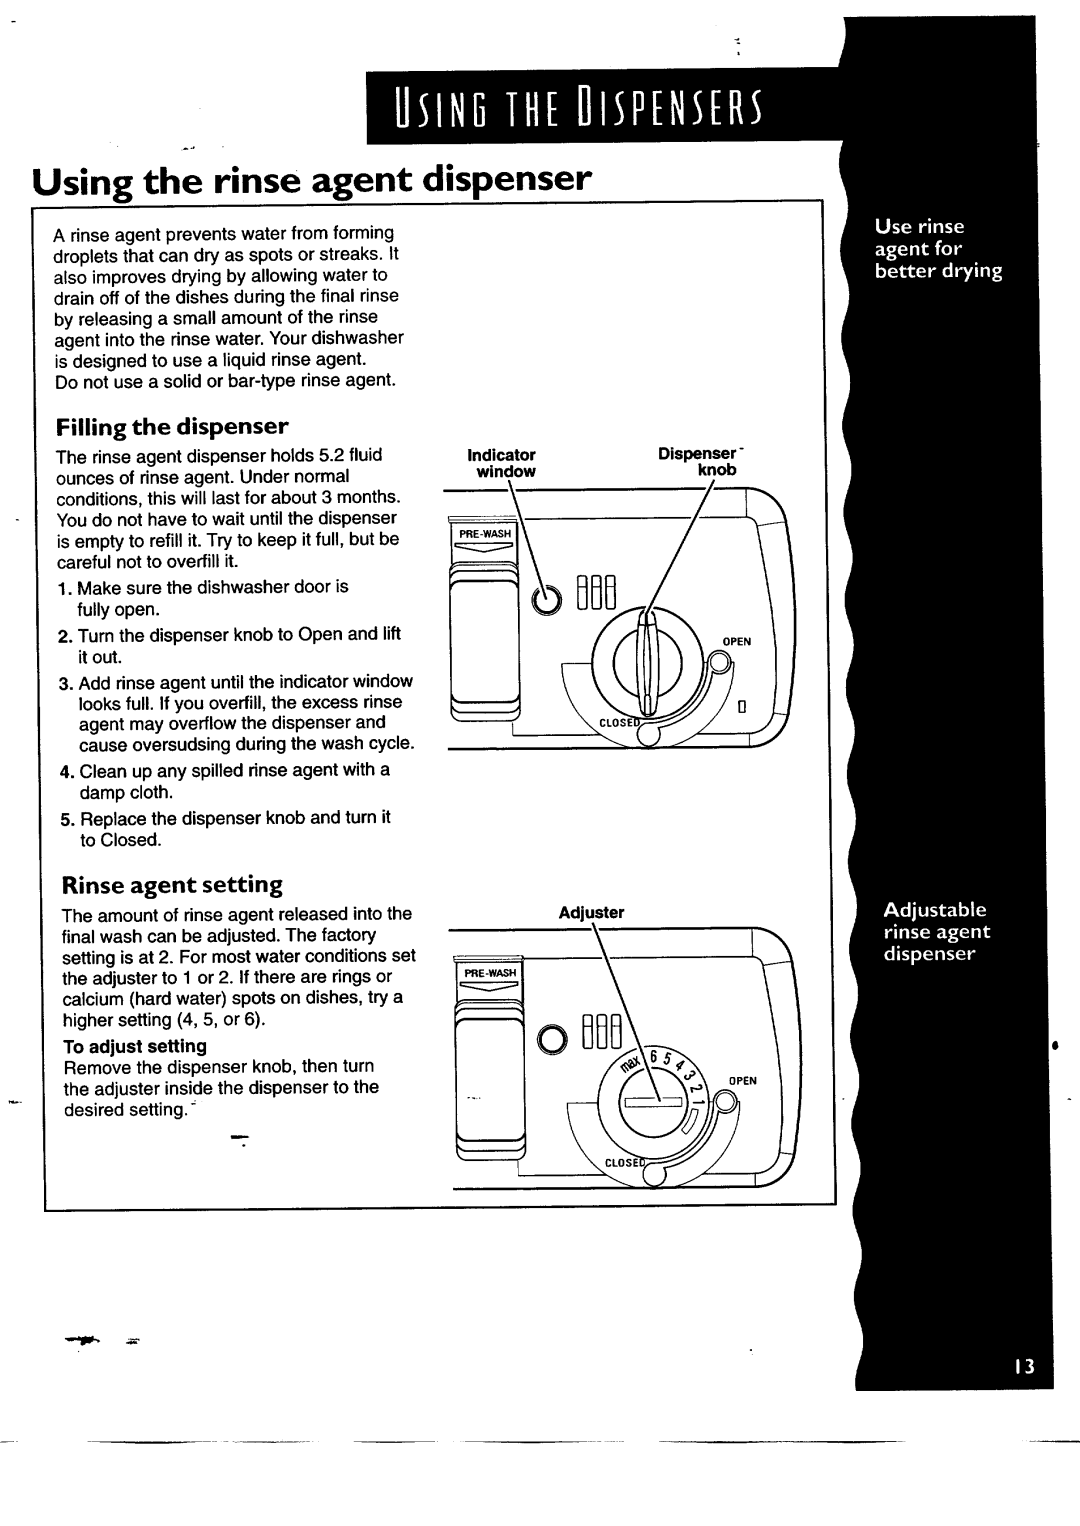 KitchenAid KUDH24SE manual Using the rinse agent dispenser, Filling the dispenser, Rinse agent setting 